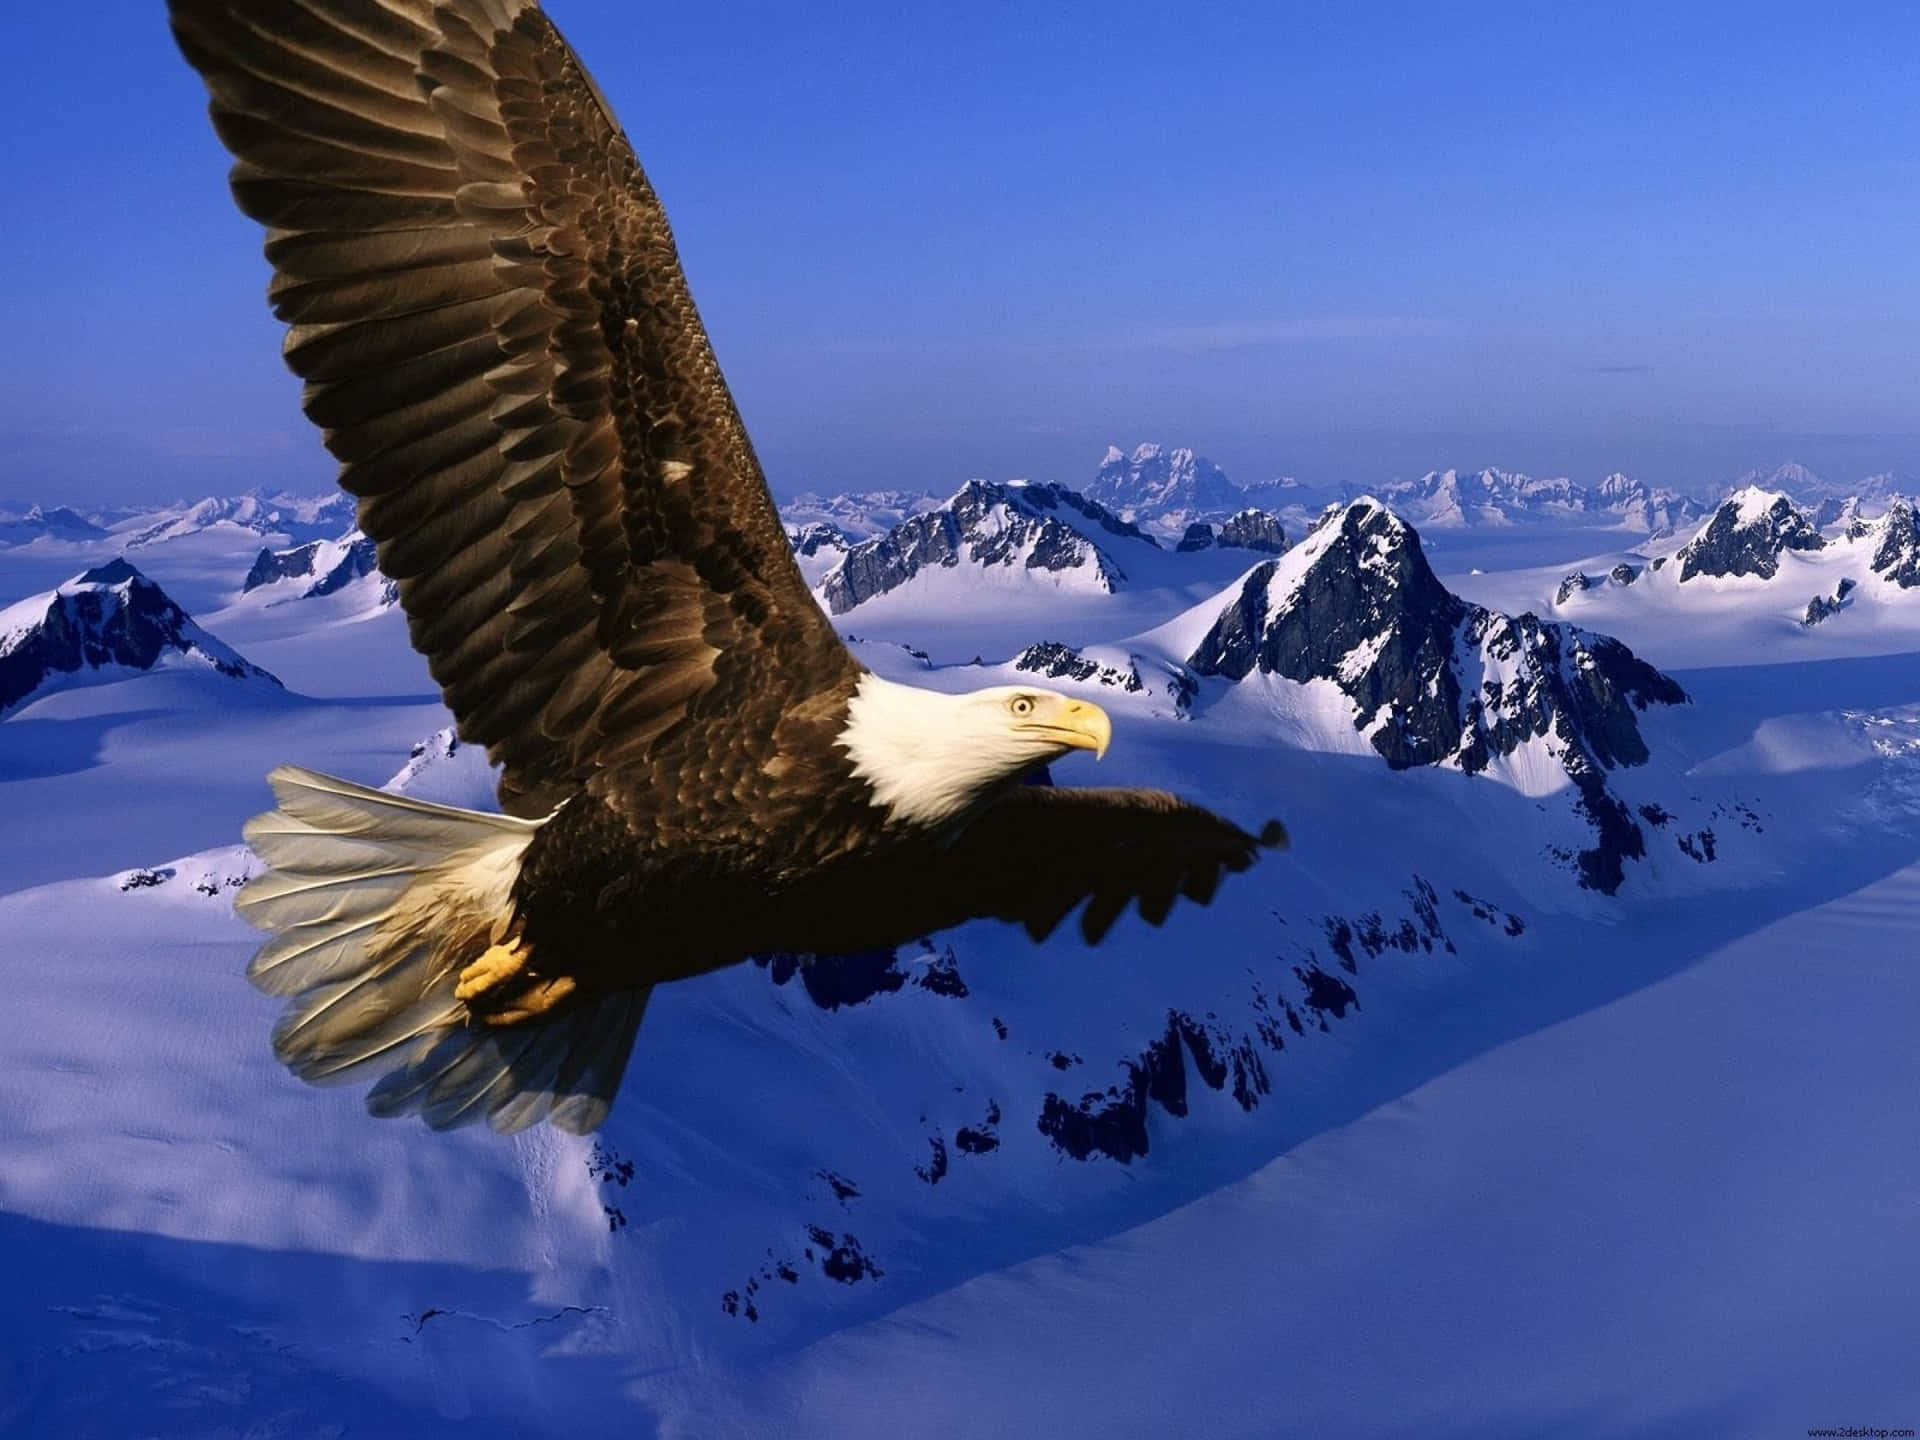 Hãy chiêm ngưỡng đồng chim bay lượn trên đỉnh núi tuyết trong bức ảnh này. Cảnh tượng đầy hoang sơ và yên bình sẽ khiến bạn thư giãn và tâm hồn được thăng hoa. Hãy cùng đắm mình vào thiên nhiên và tìm lại sự bình yên bên đôi cánh cùng núi tuyết trong bức ảnh này.